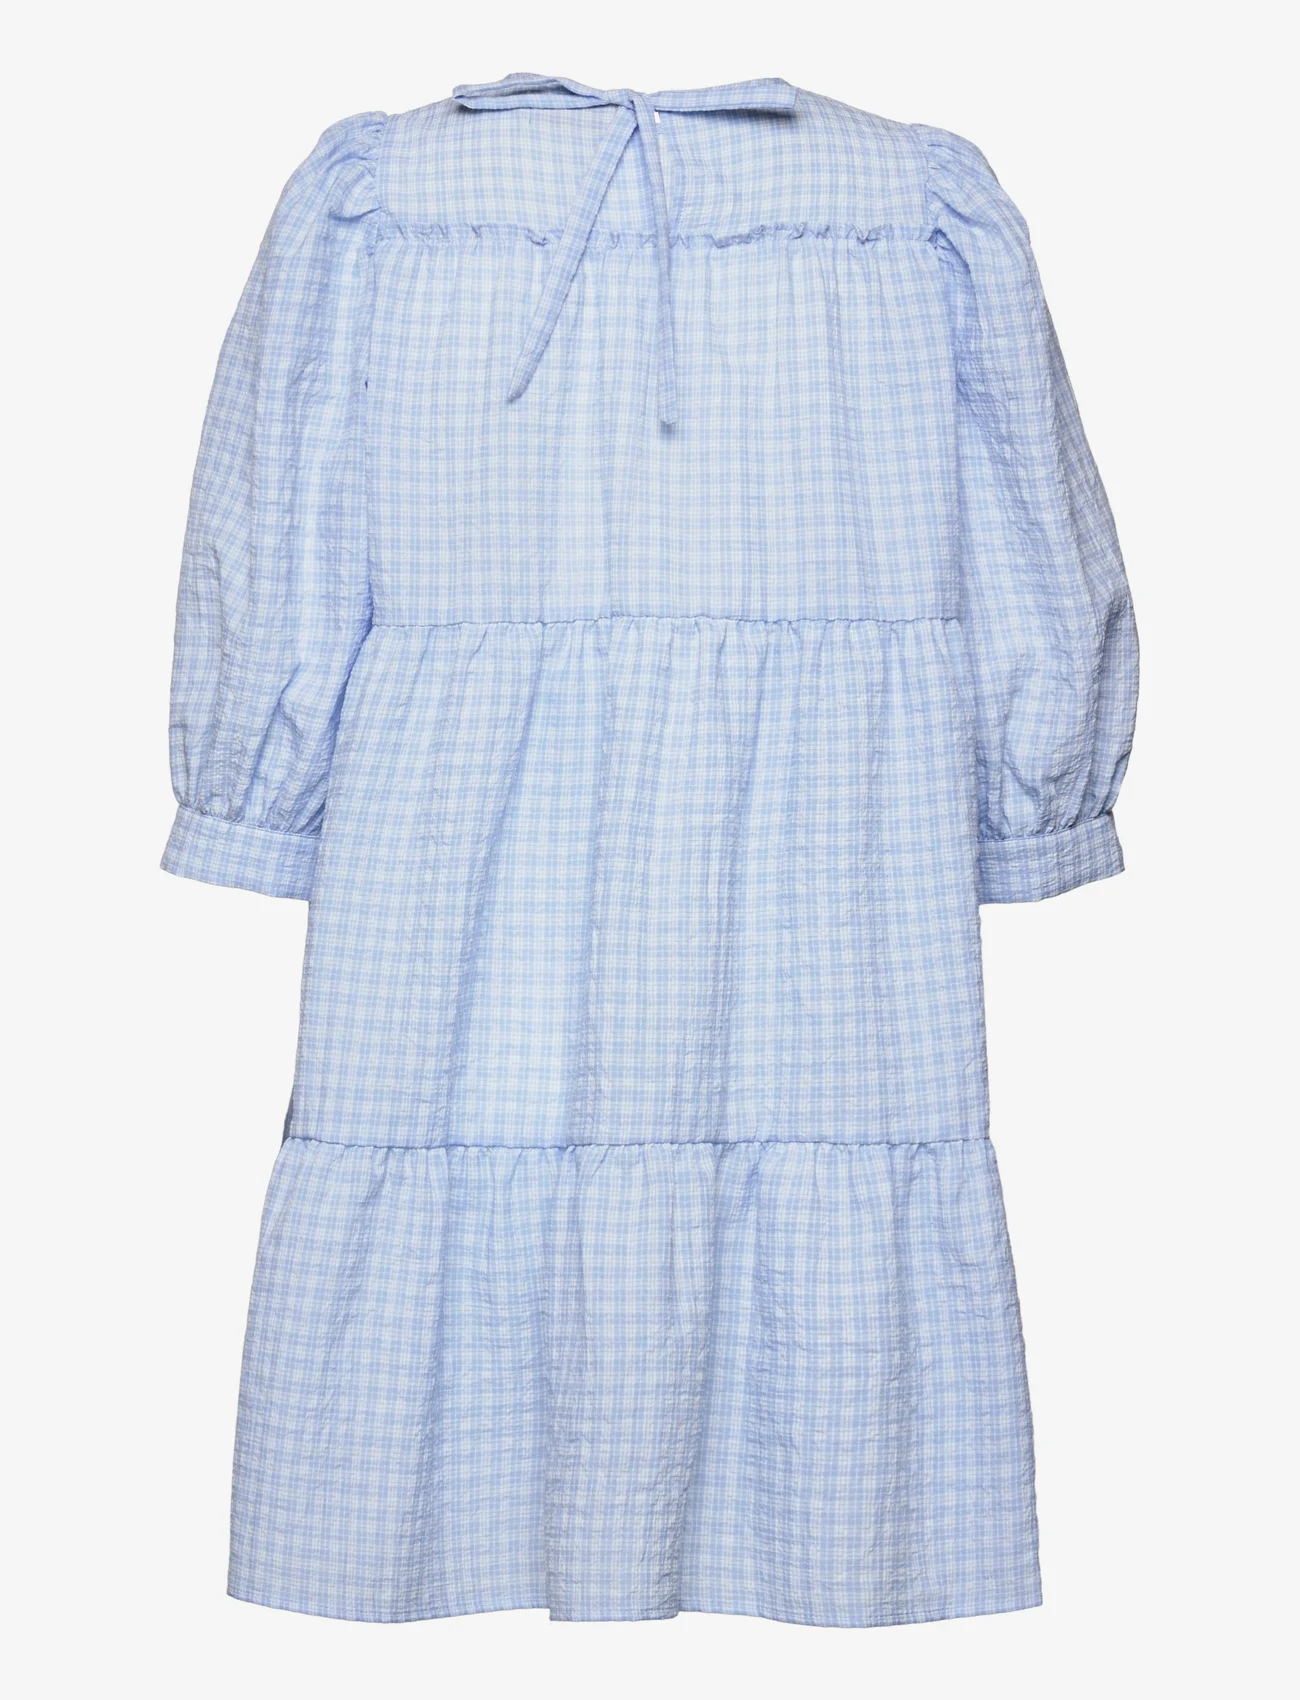 Minus - Rowen kjole - korte kjoler - blue checked - 1